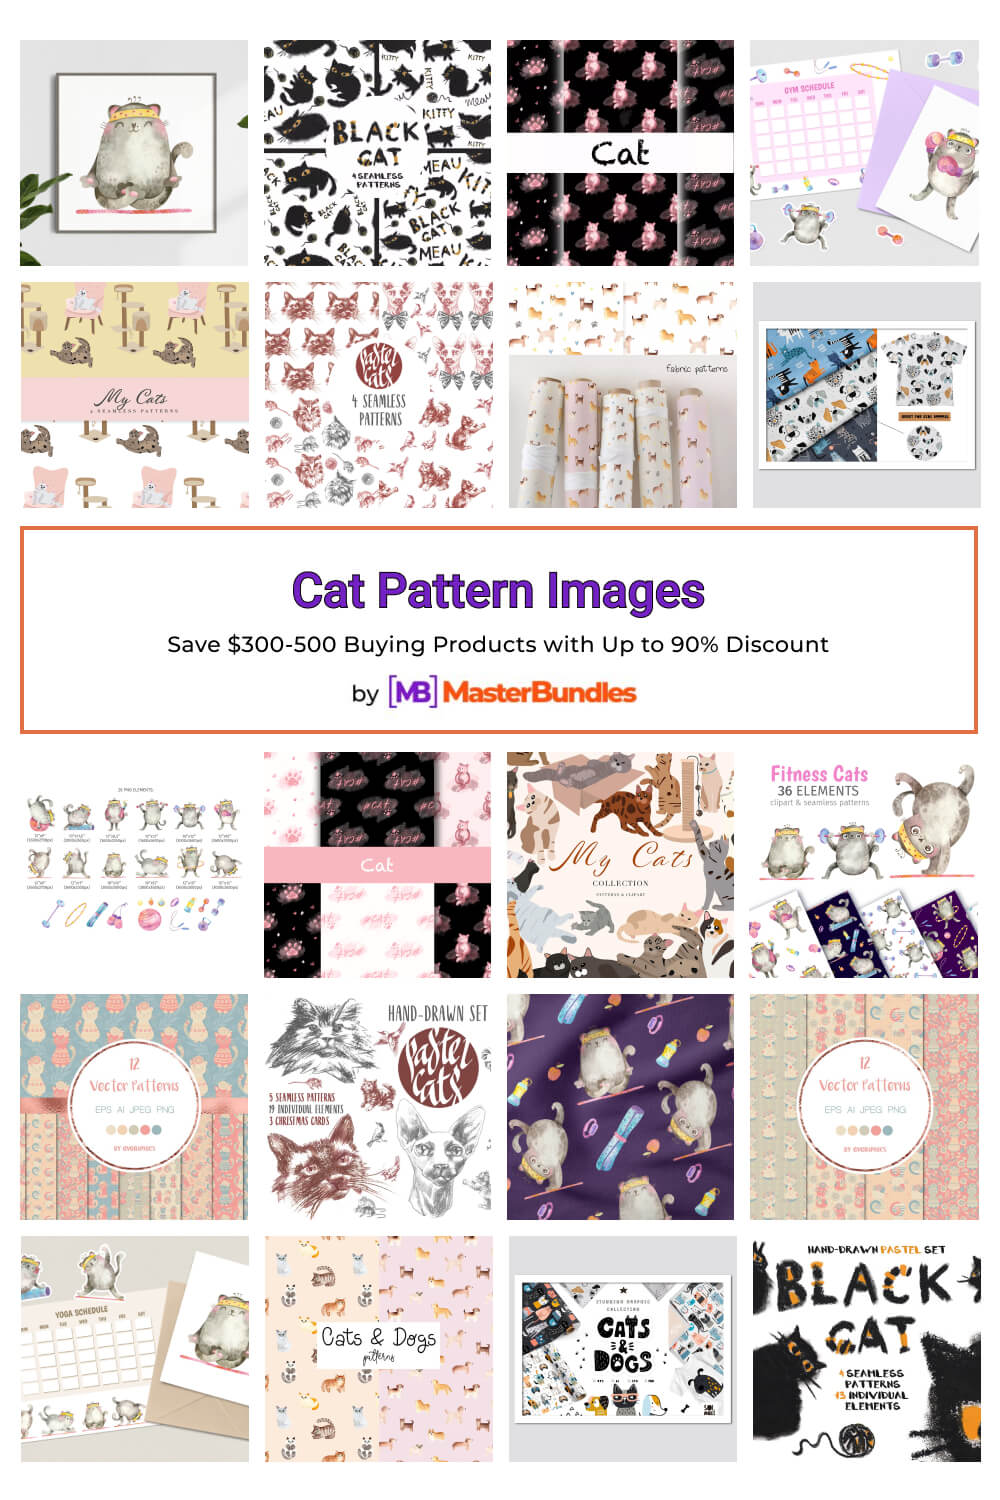 cat pattern images pinterest image.